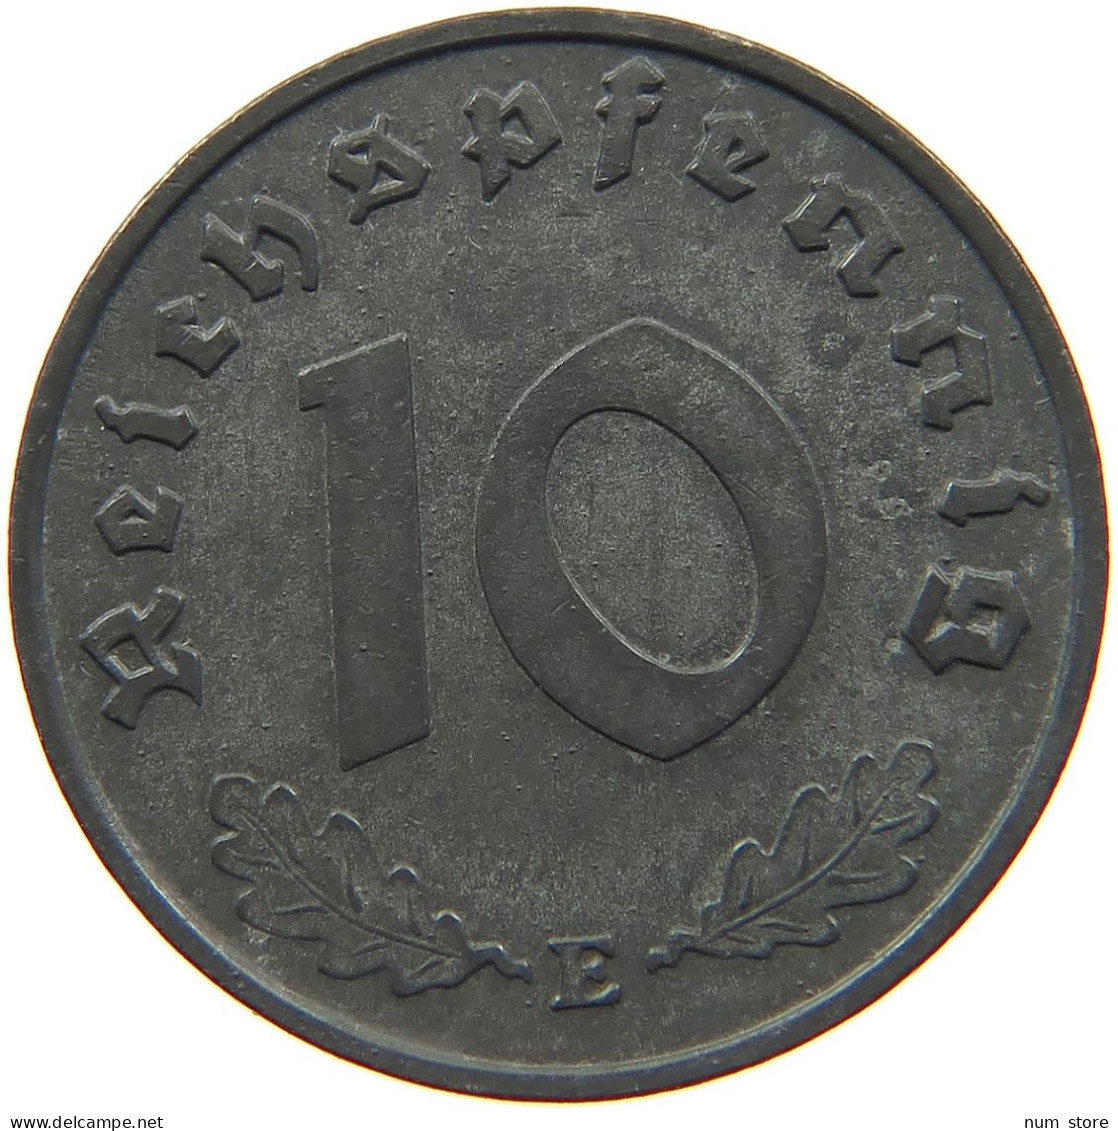 GERMANY 10 REICHSPFENNIG 1940 E #s095 0017 - 10 Reichspfennig